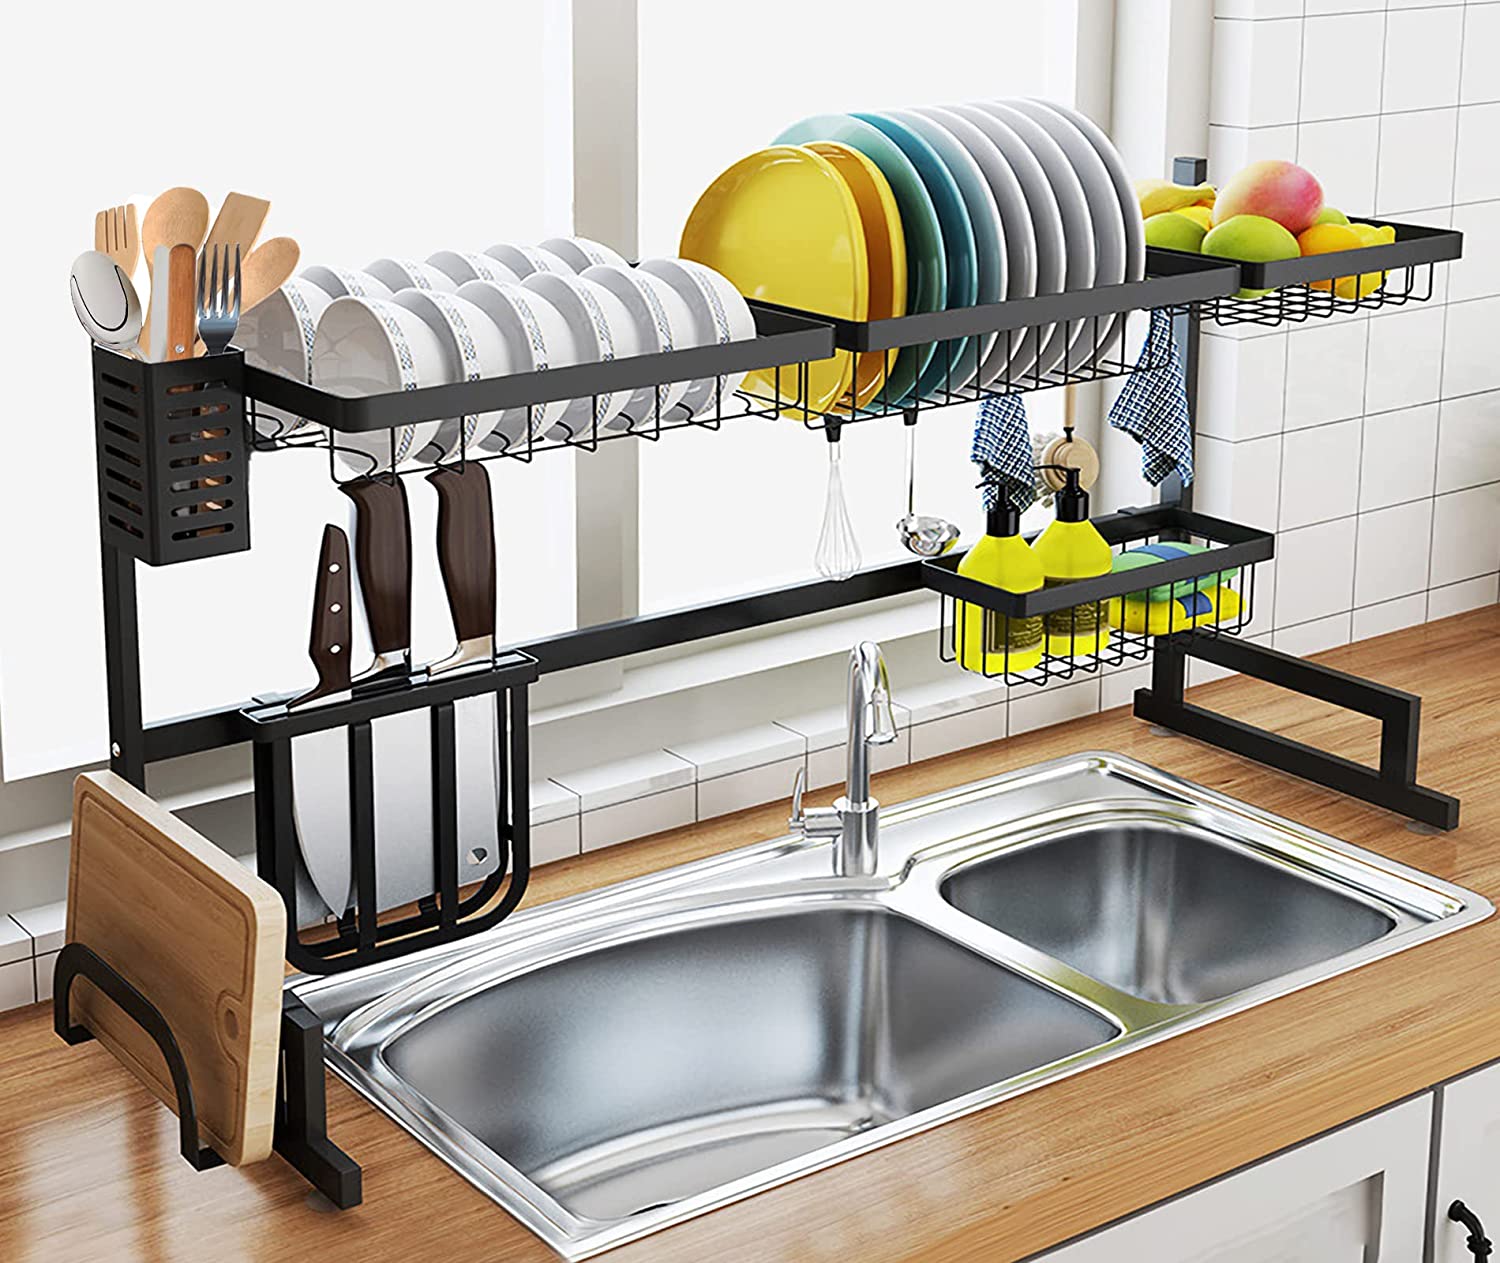  5. UIFER Black Over Sink Dish Drying Rack Kitchen Supplies Organizer 